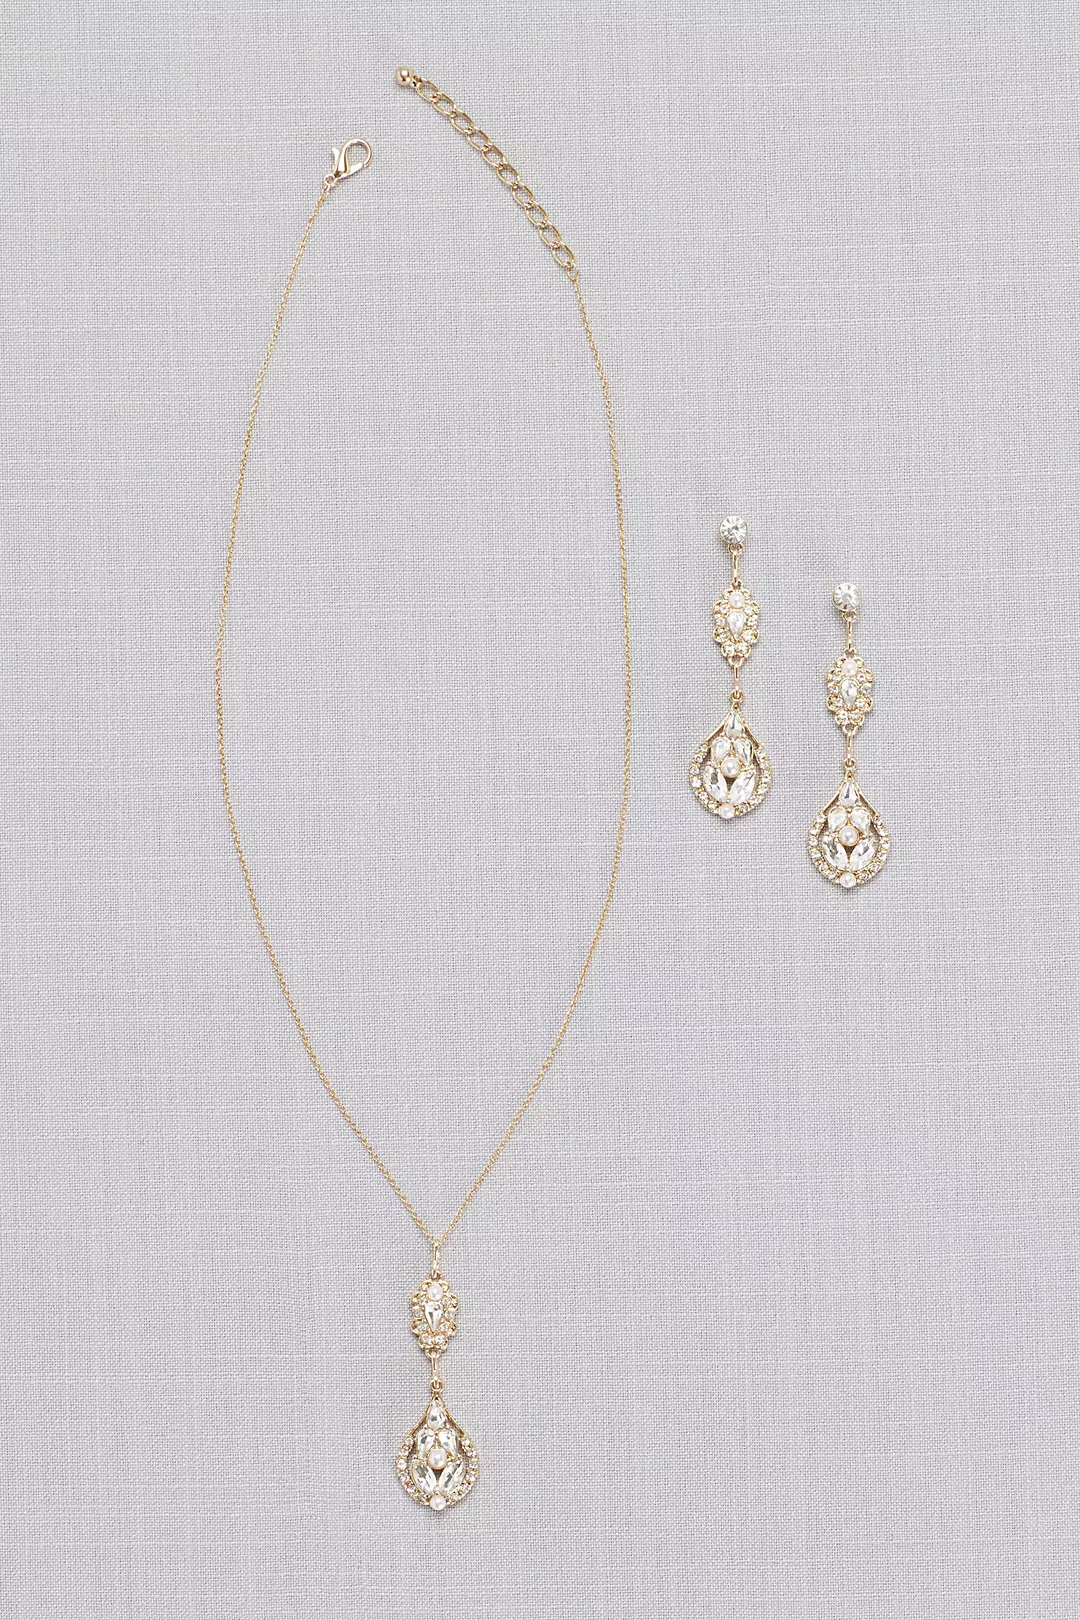 Vintage-Inspired Crystal Cluster Necklace Image 3